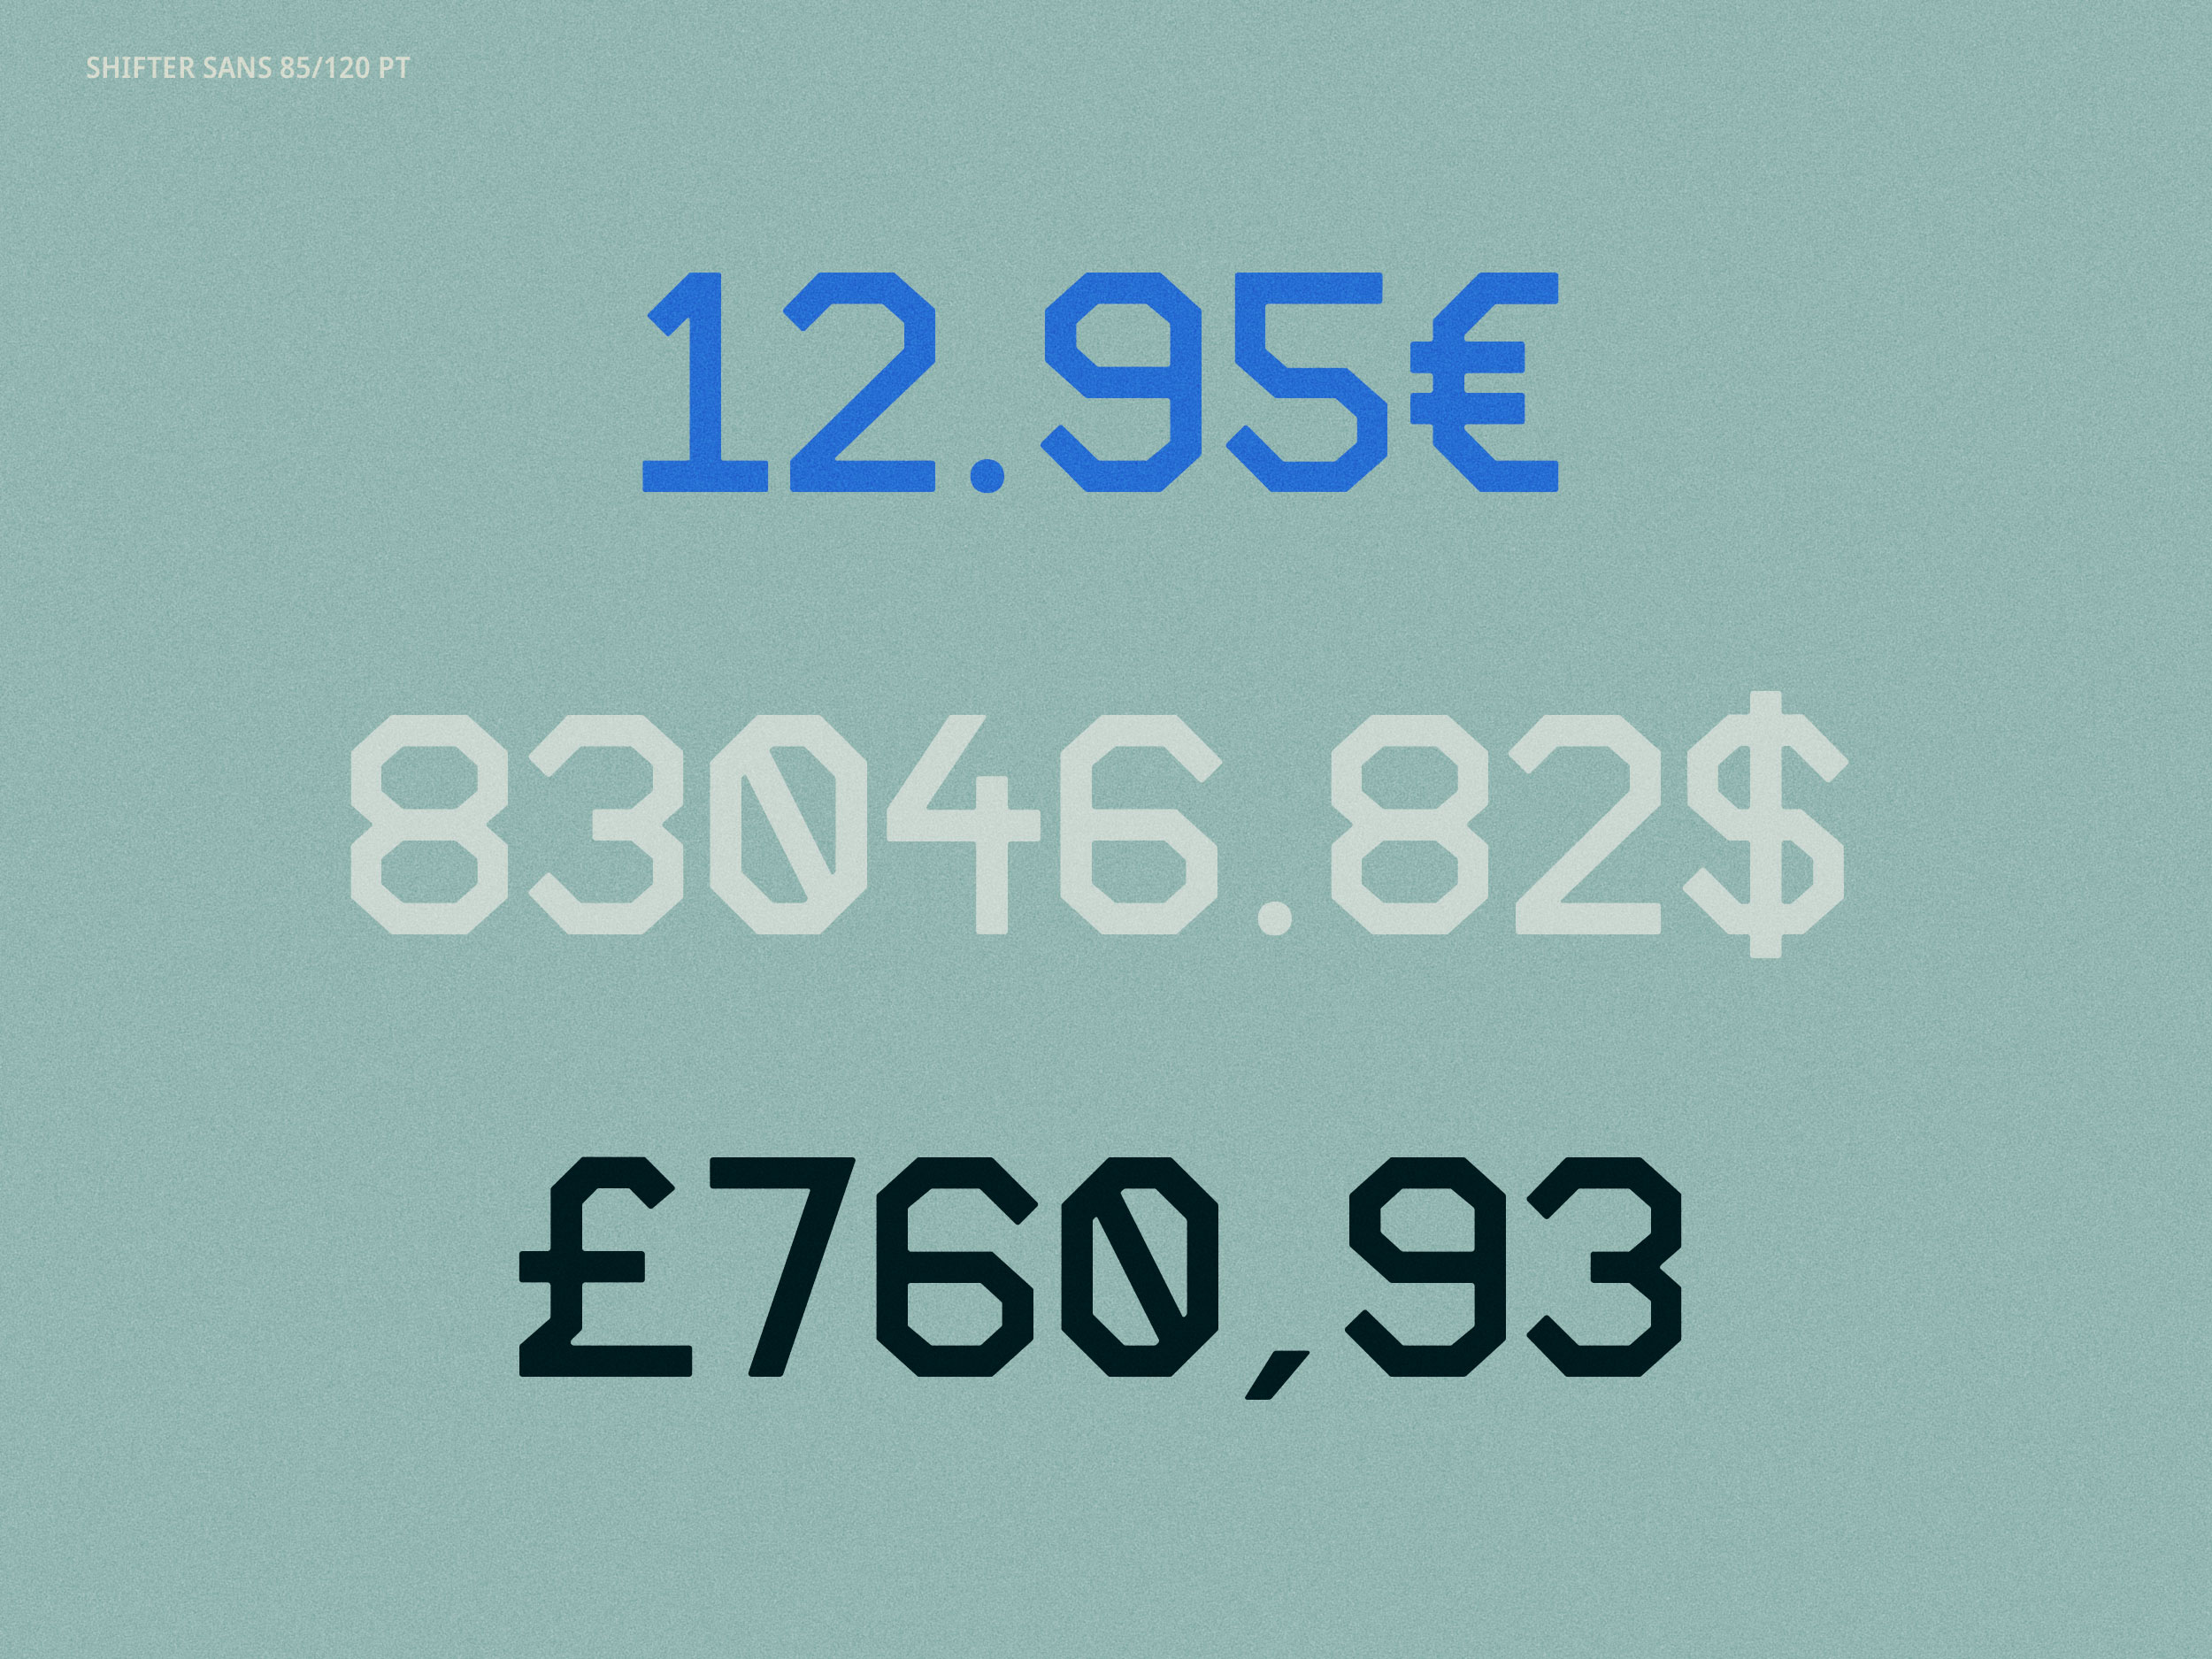 Shifter Sans specimen - numbers, currency symbols